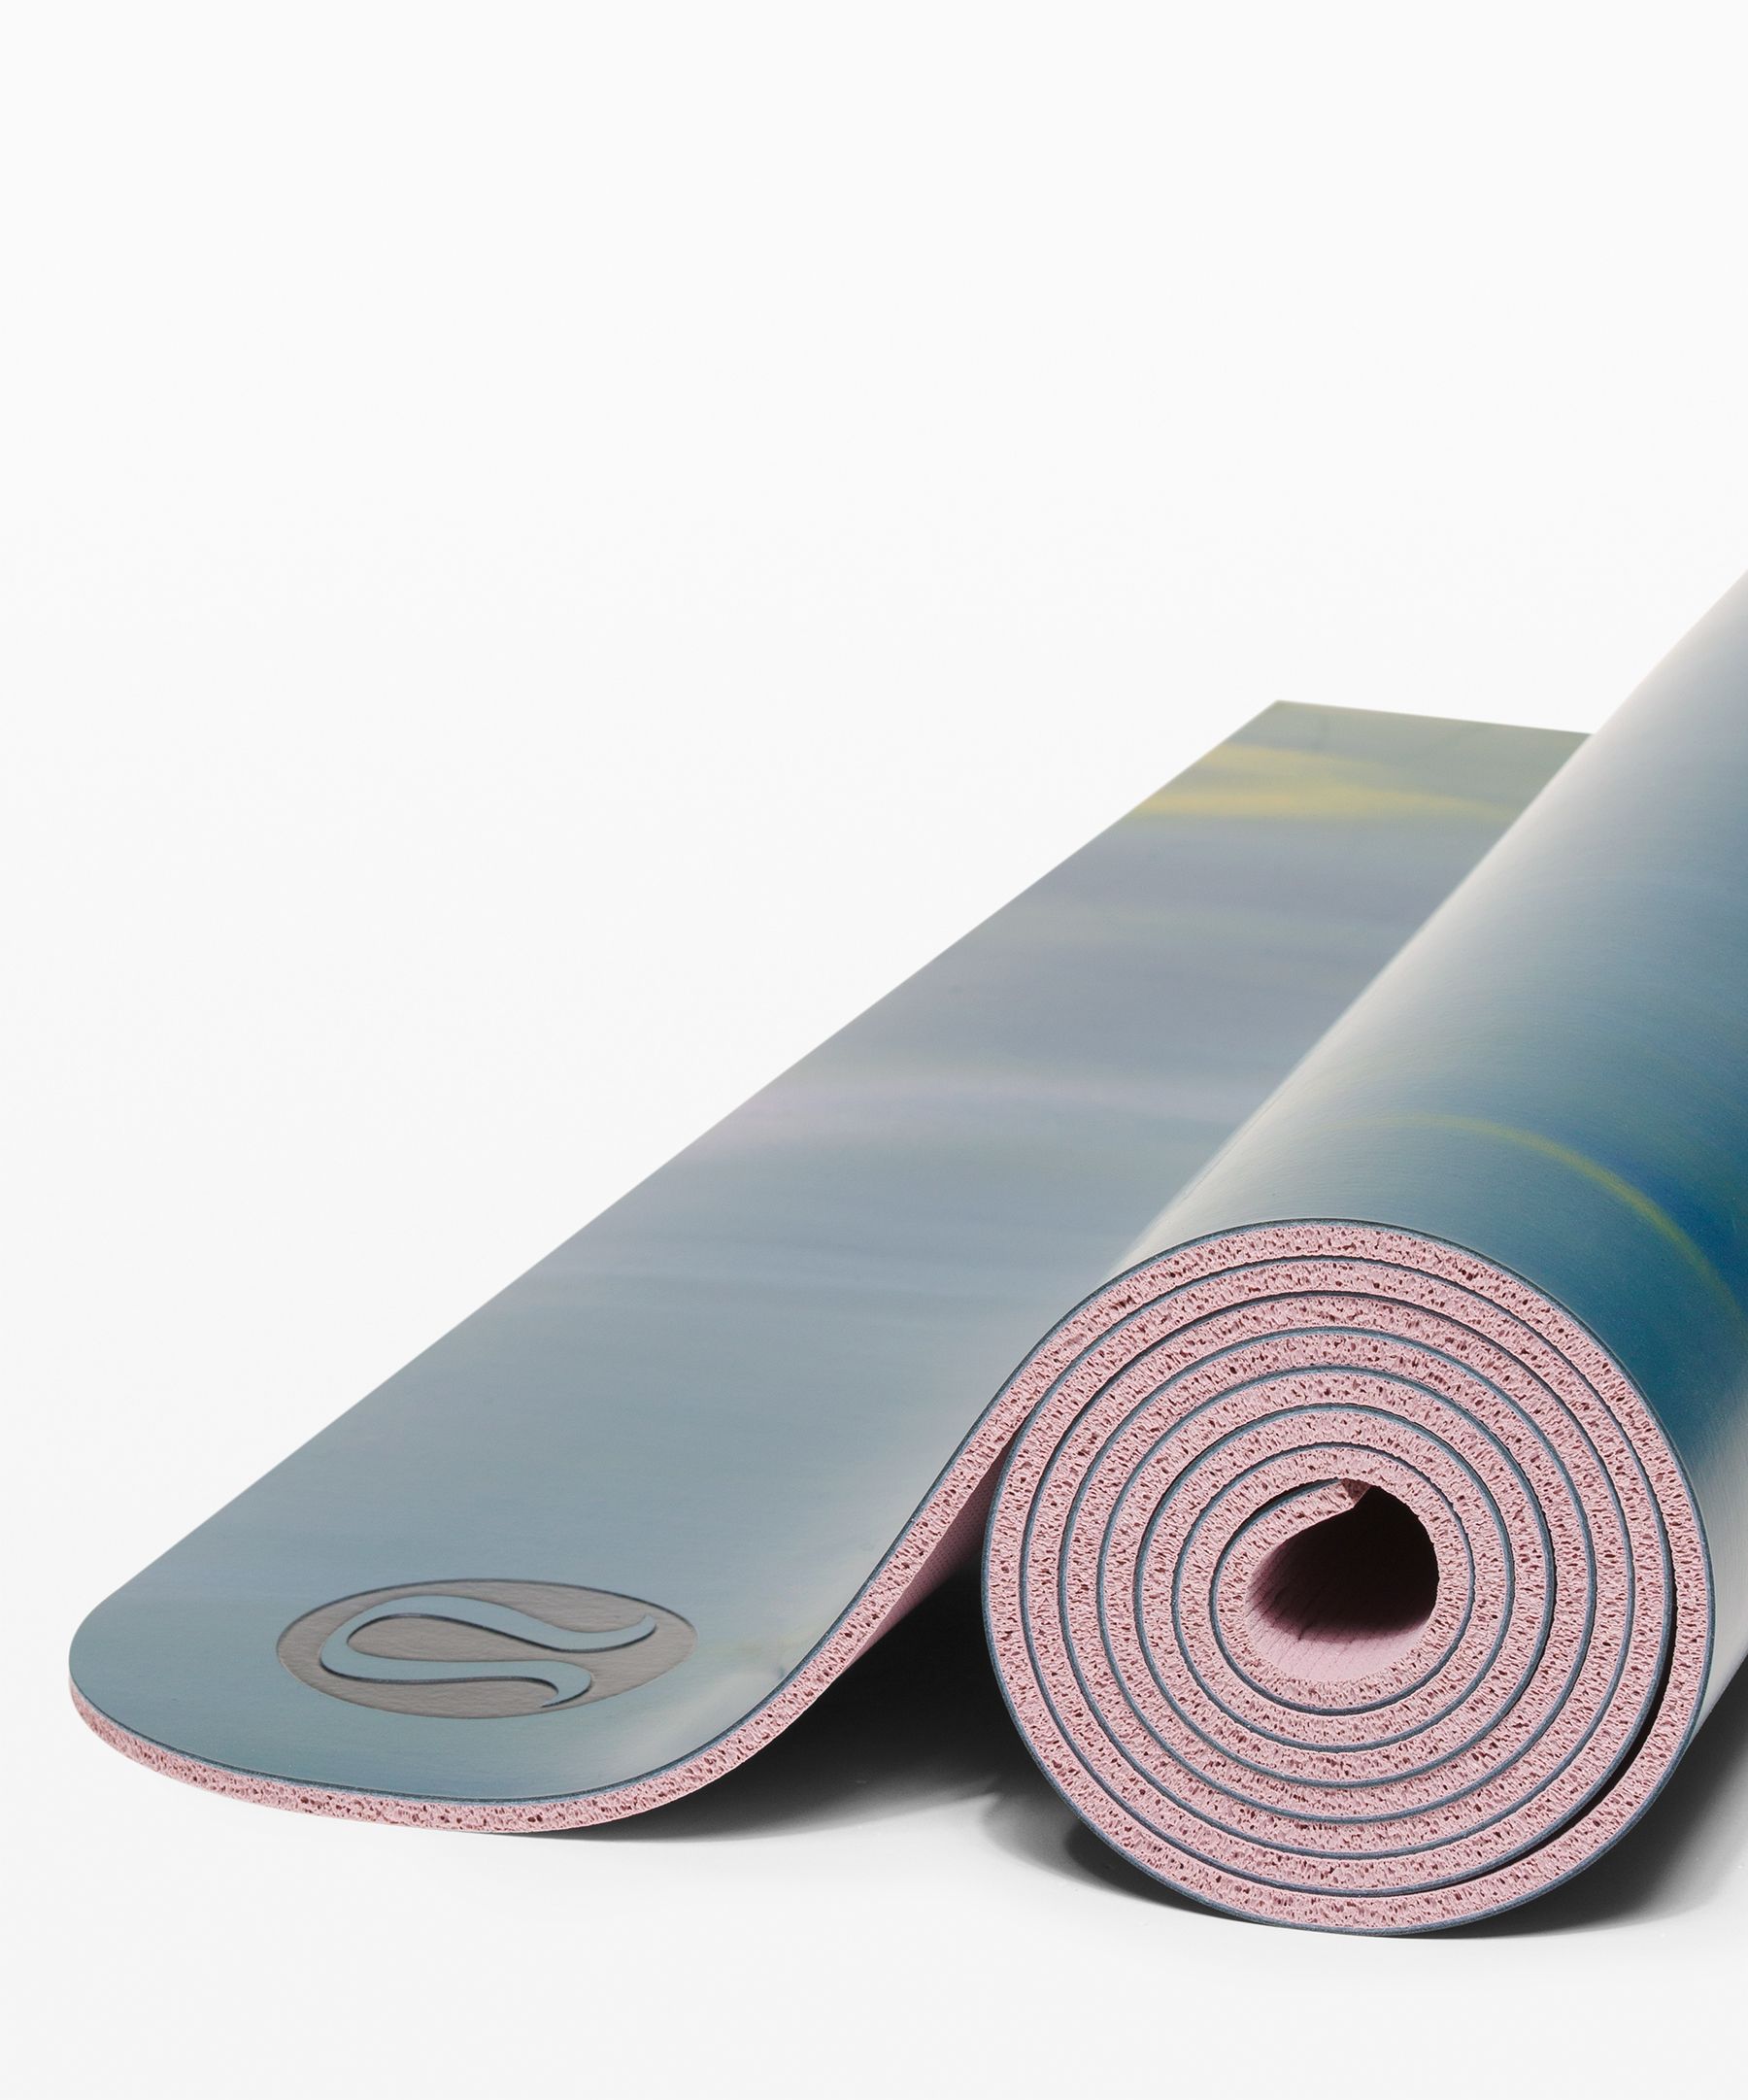 lululemon yoga mat used